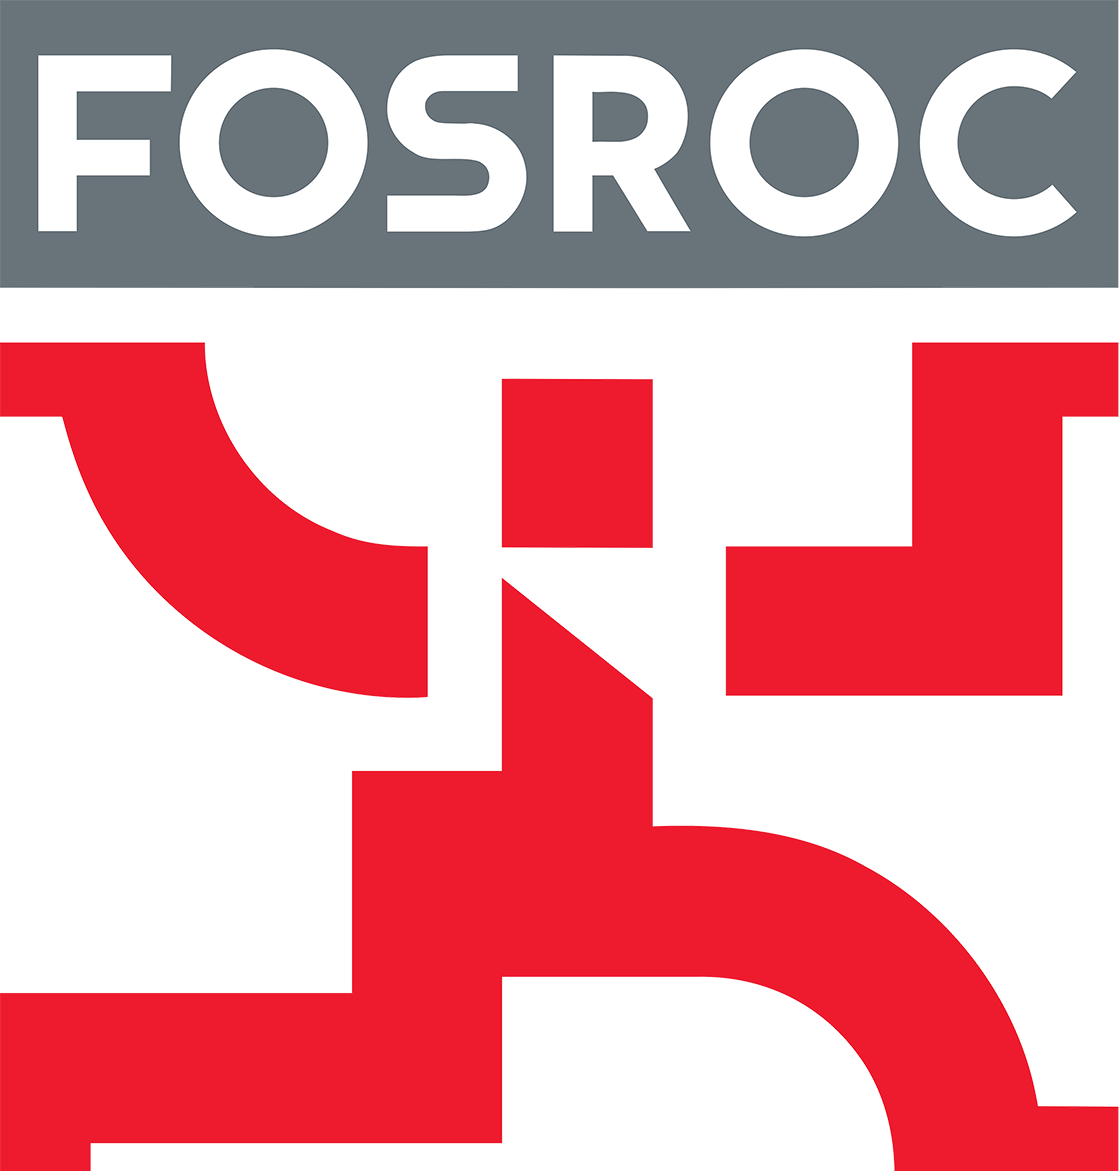 FOSROC